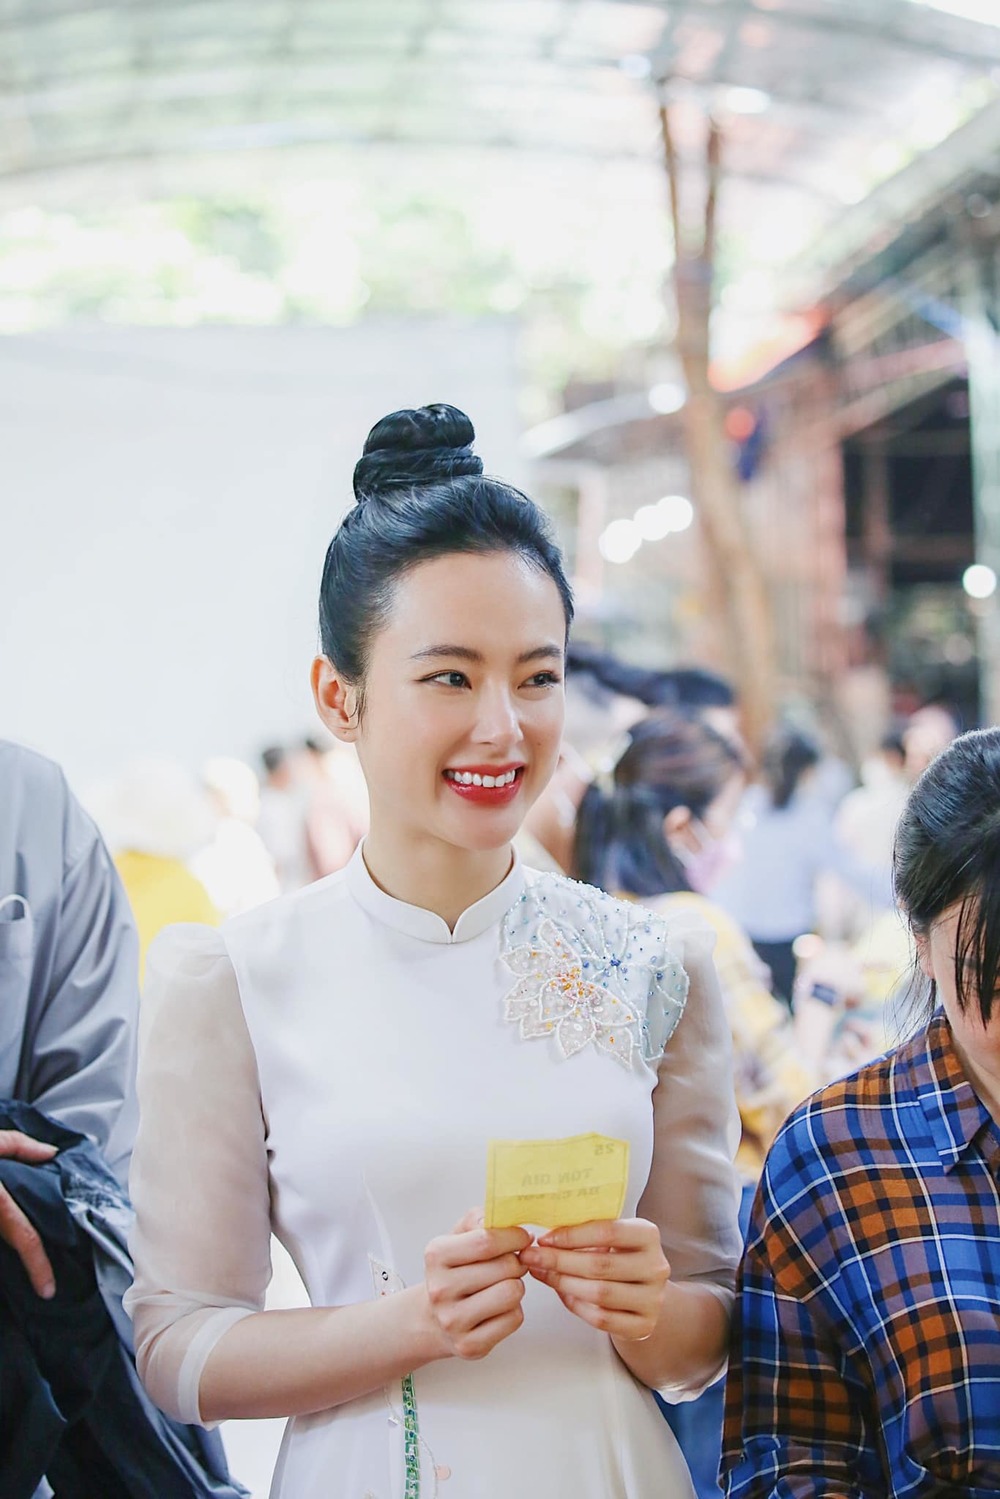  Nữ diễn viên xinh đẹp đi lễ chùa đầu năm, diện áo dài trắng với họa tiết lá sen ở cầu vai. - Tin sao Viet - Tin tuc sao Viet - Scandal sao Viet - Tin tuc cua Sao - Tin cua Sao